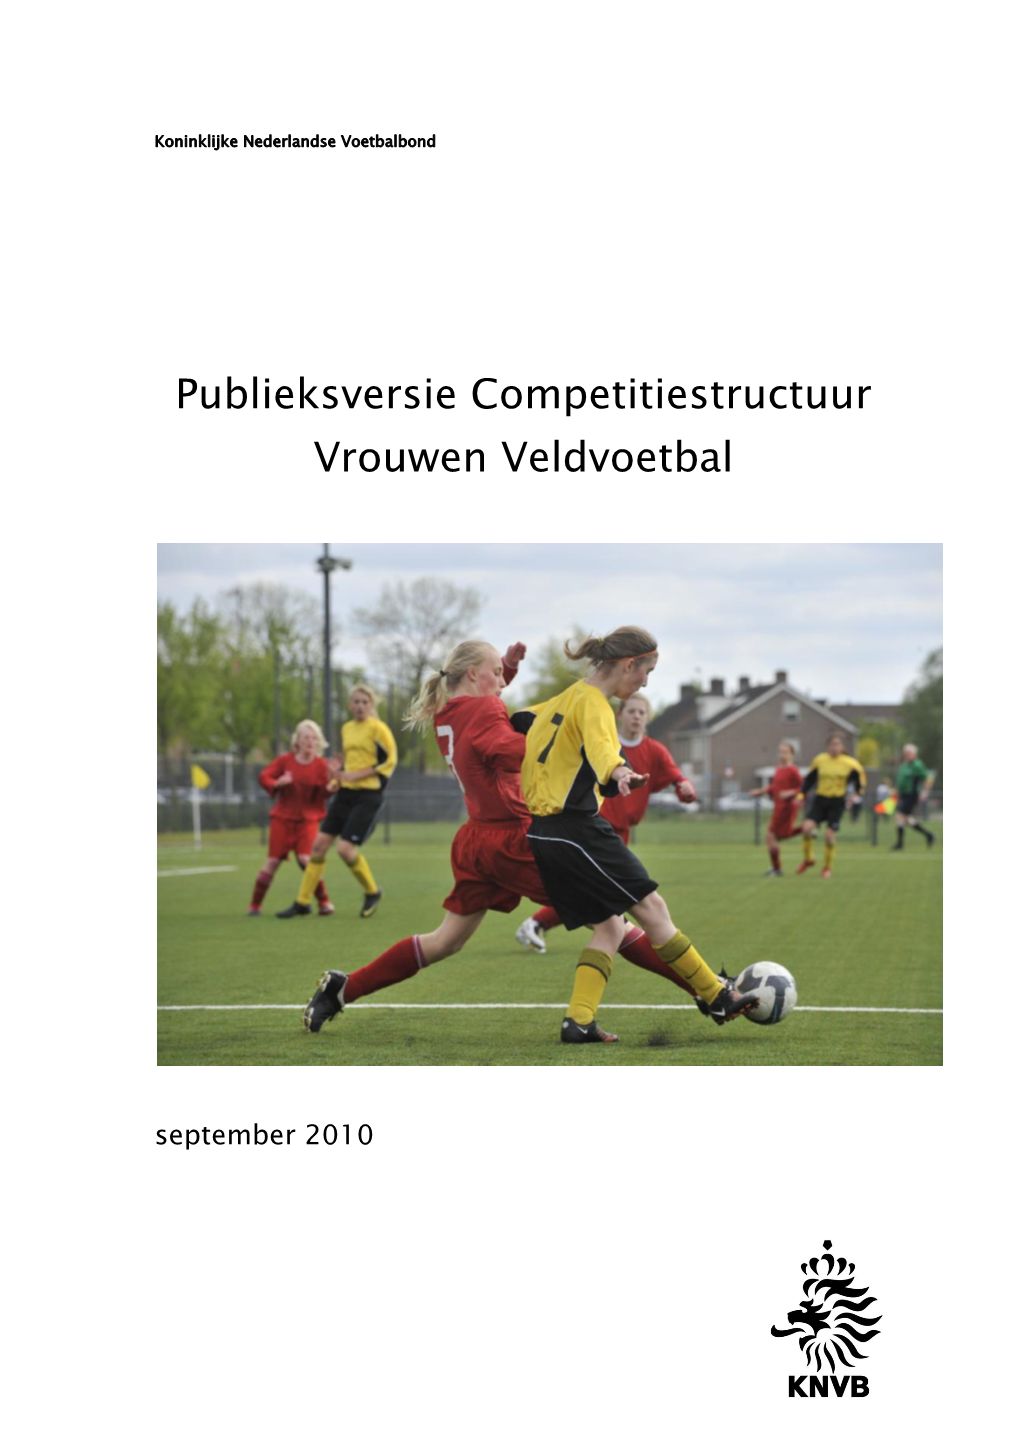 Voorstel Aanpassing Competitie Vrouwen Veldvoetbal